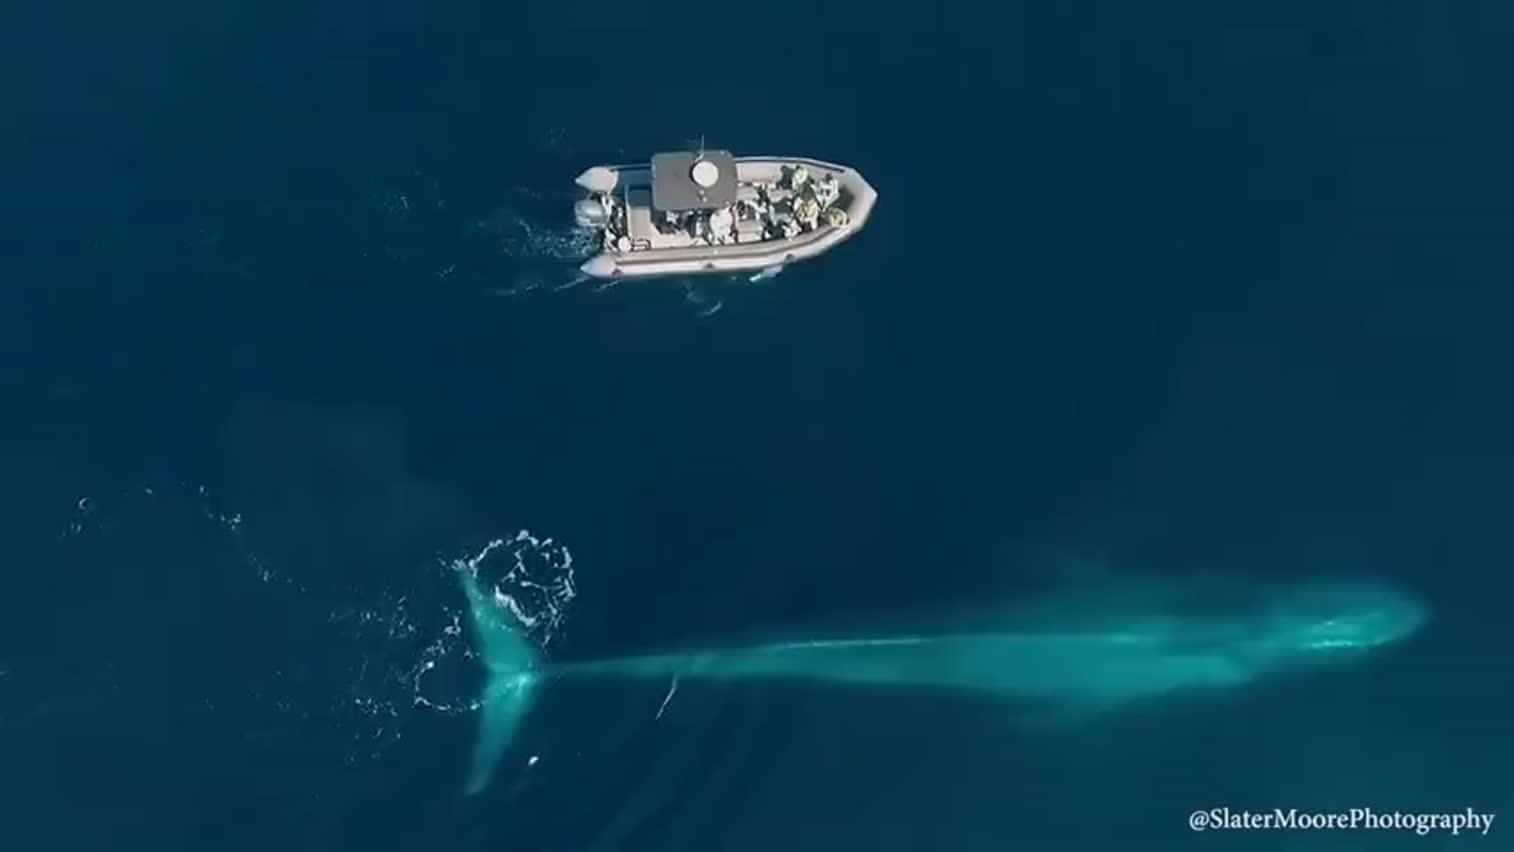 视频-波光粼粼的海面 蓝鲸与小艇缓缓伴游